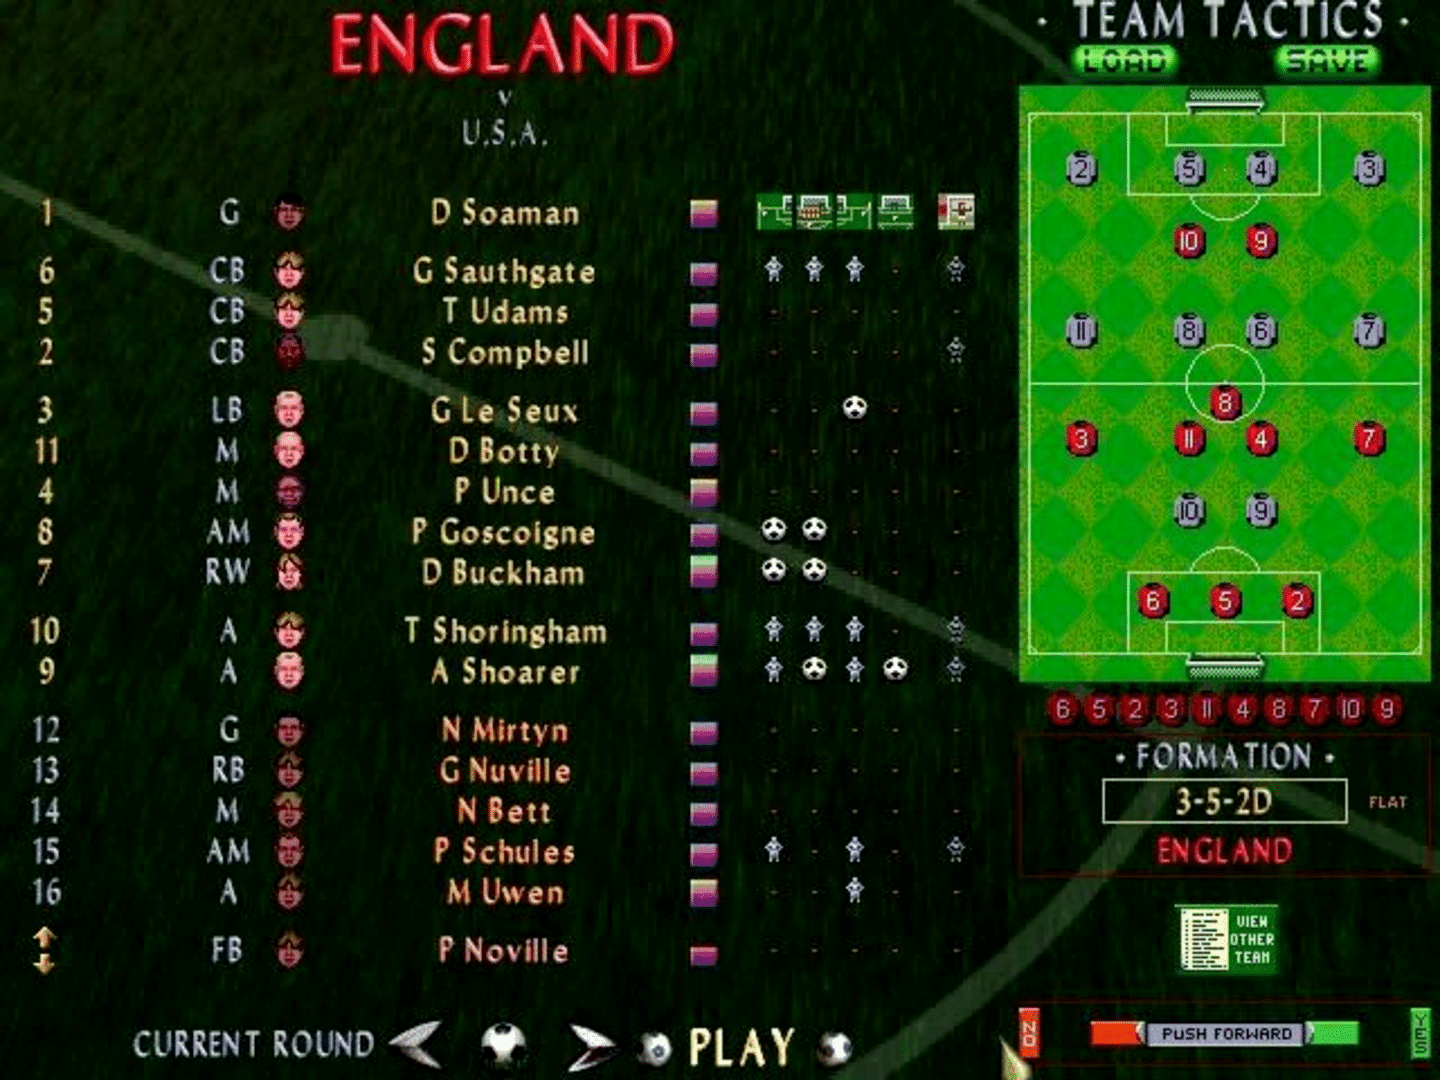 Sensible Soccer '98 screenshot